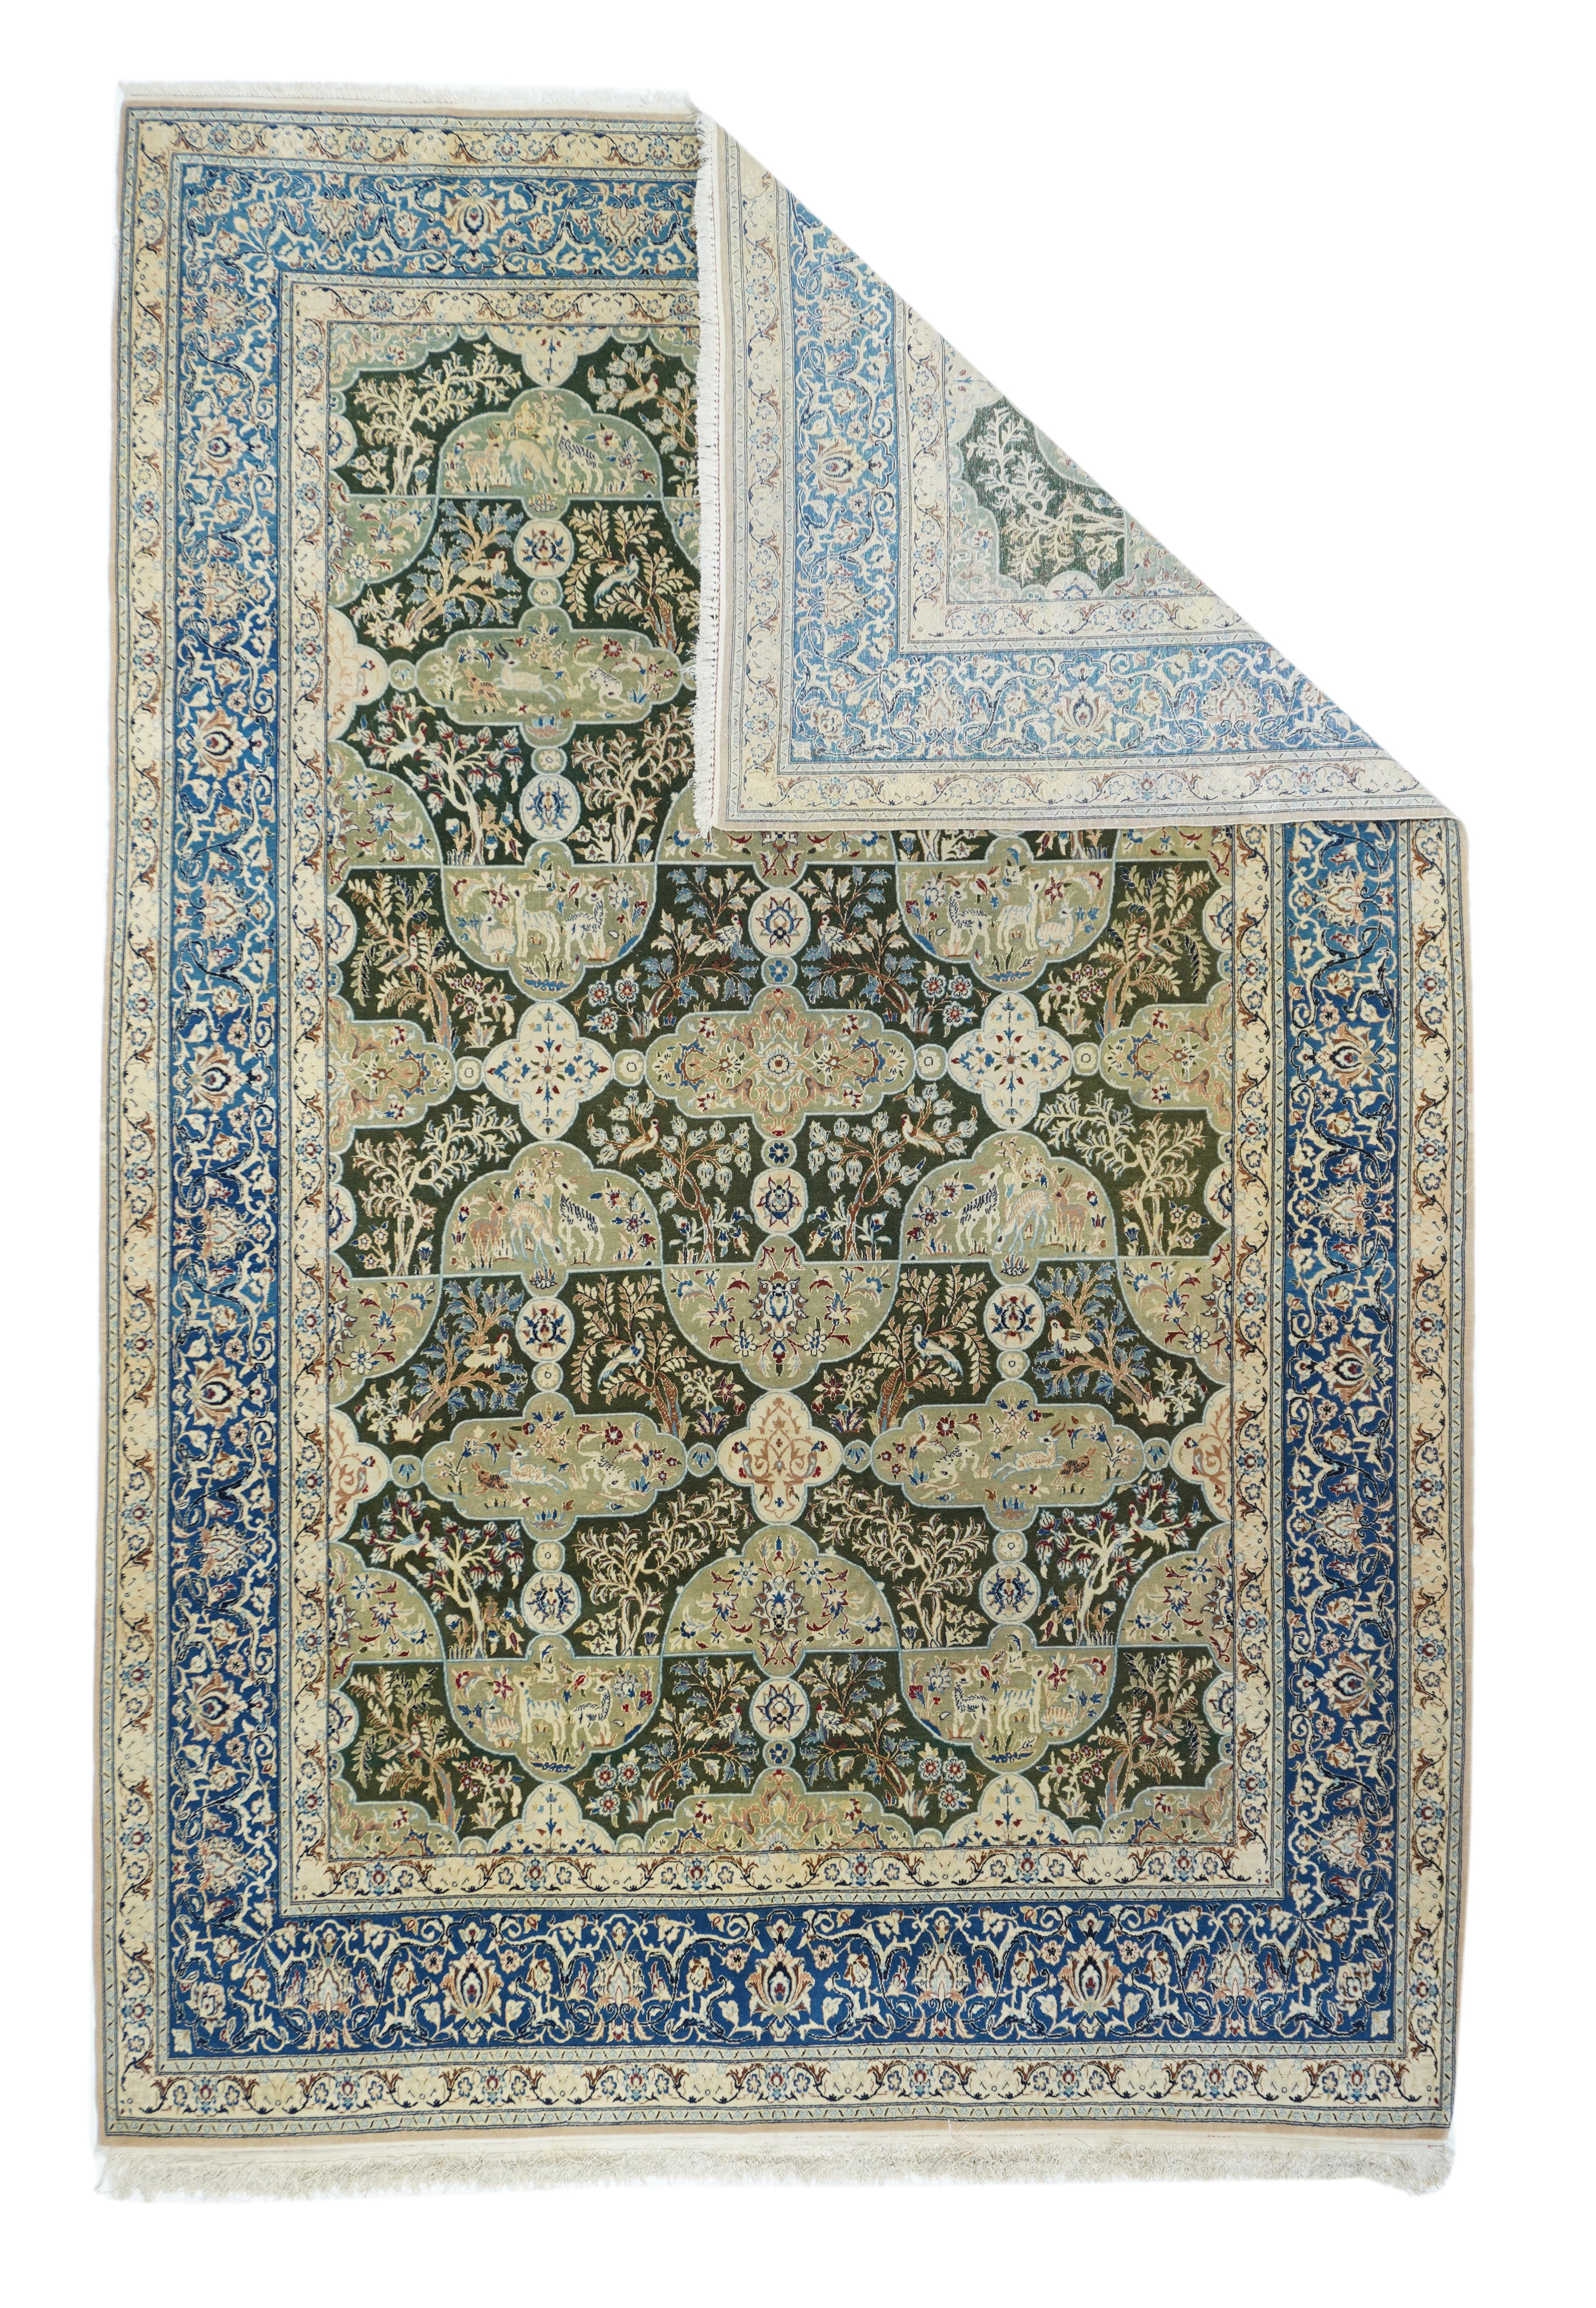 Les tapis Nain sont fabriqués à l'aide du nœud persan et comptent généralement entre 300 et 700 nœuds par pouce carré. Le poil est généralement de la laine de très haute qualité, coupée court, et la soie est souvent utilisée pour souligner les